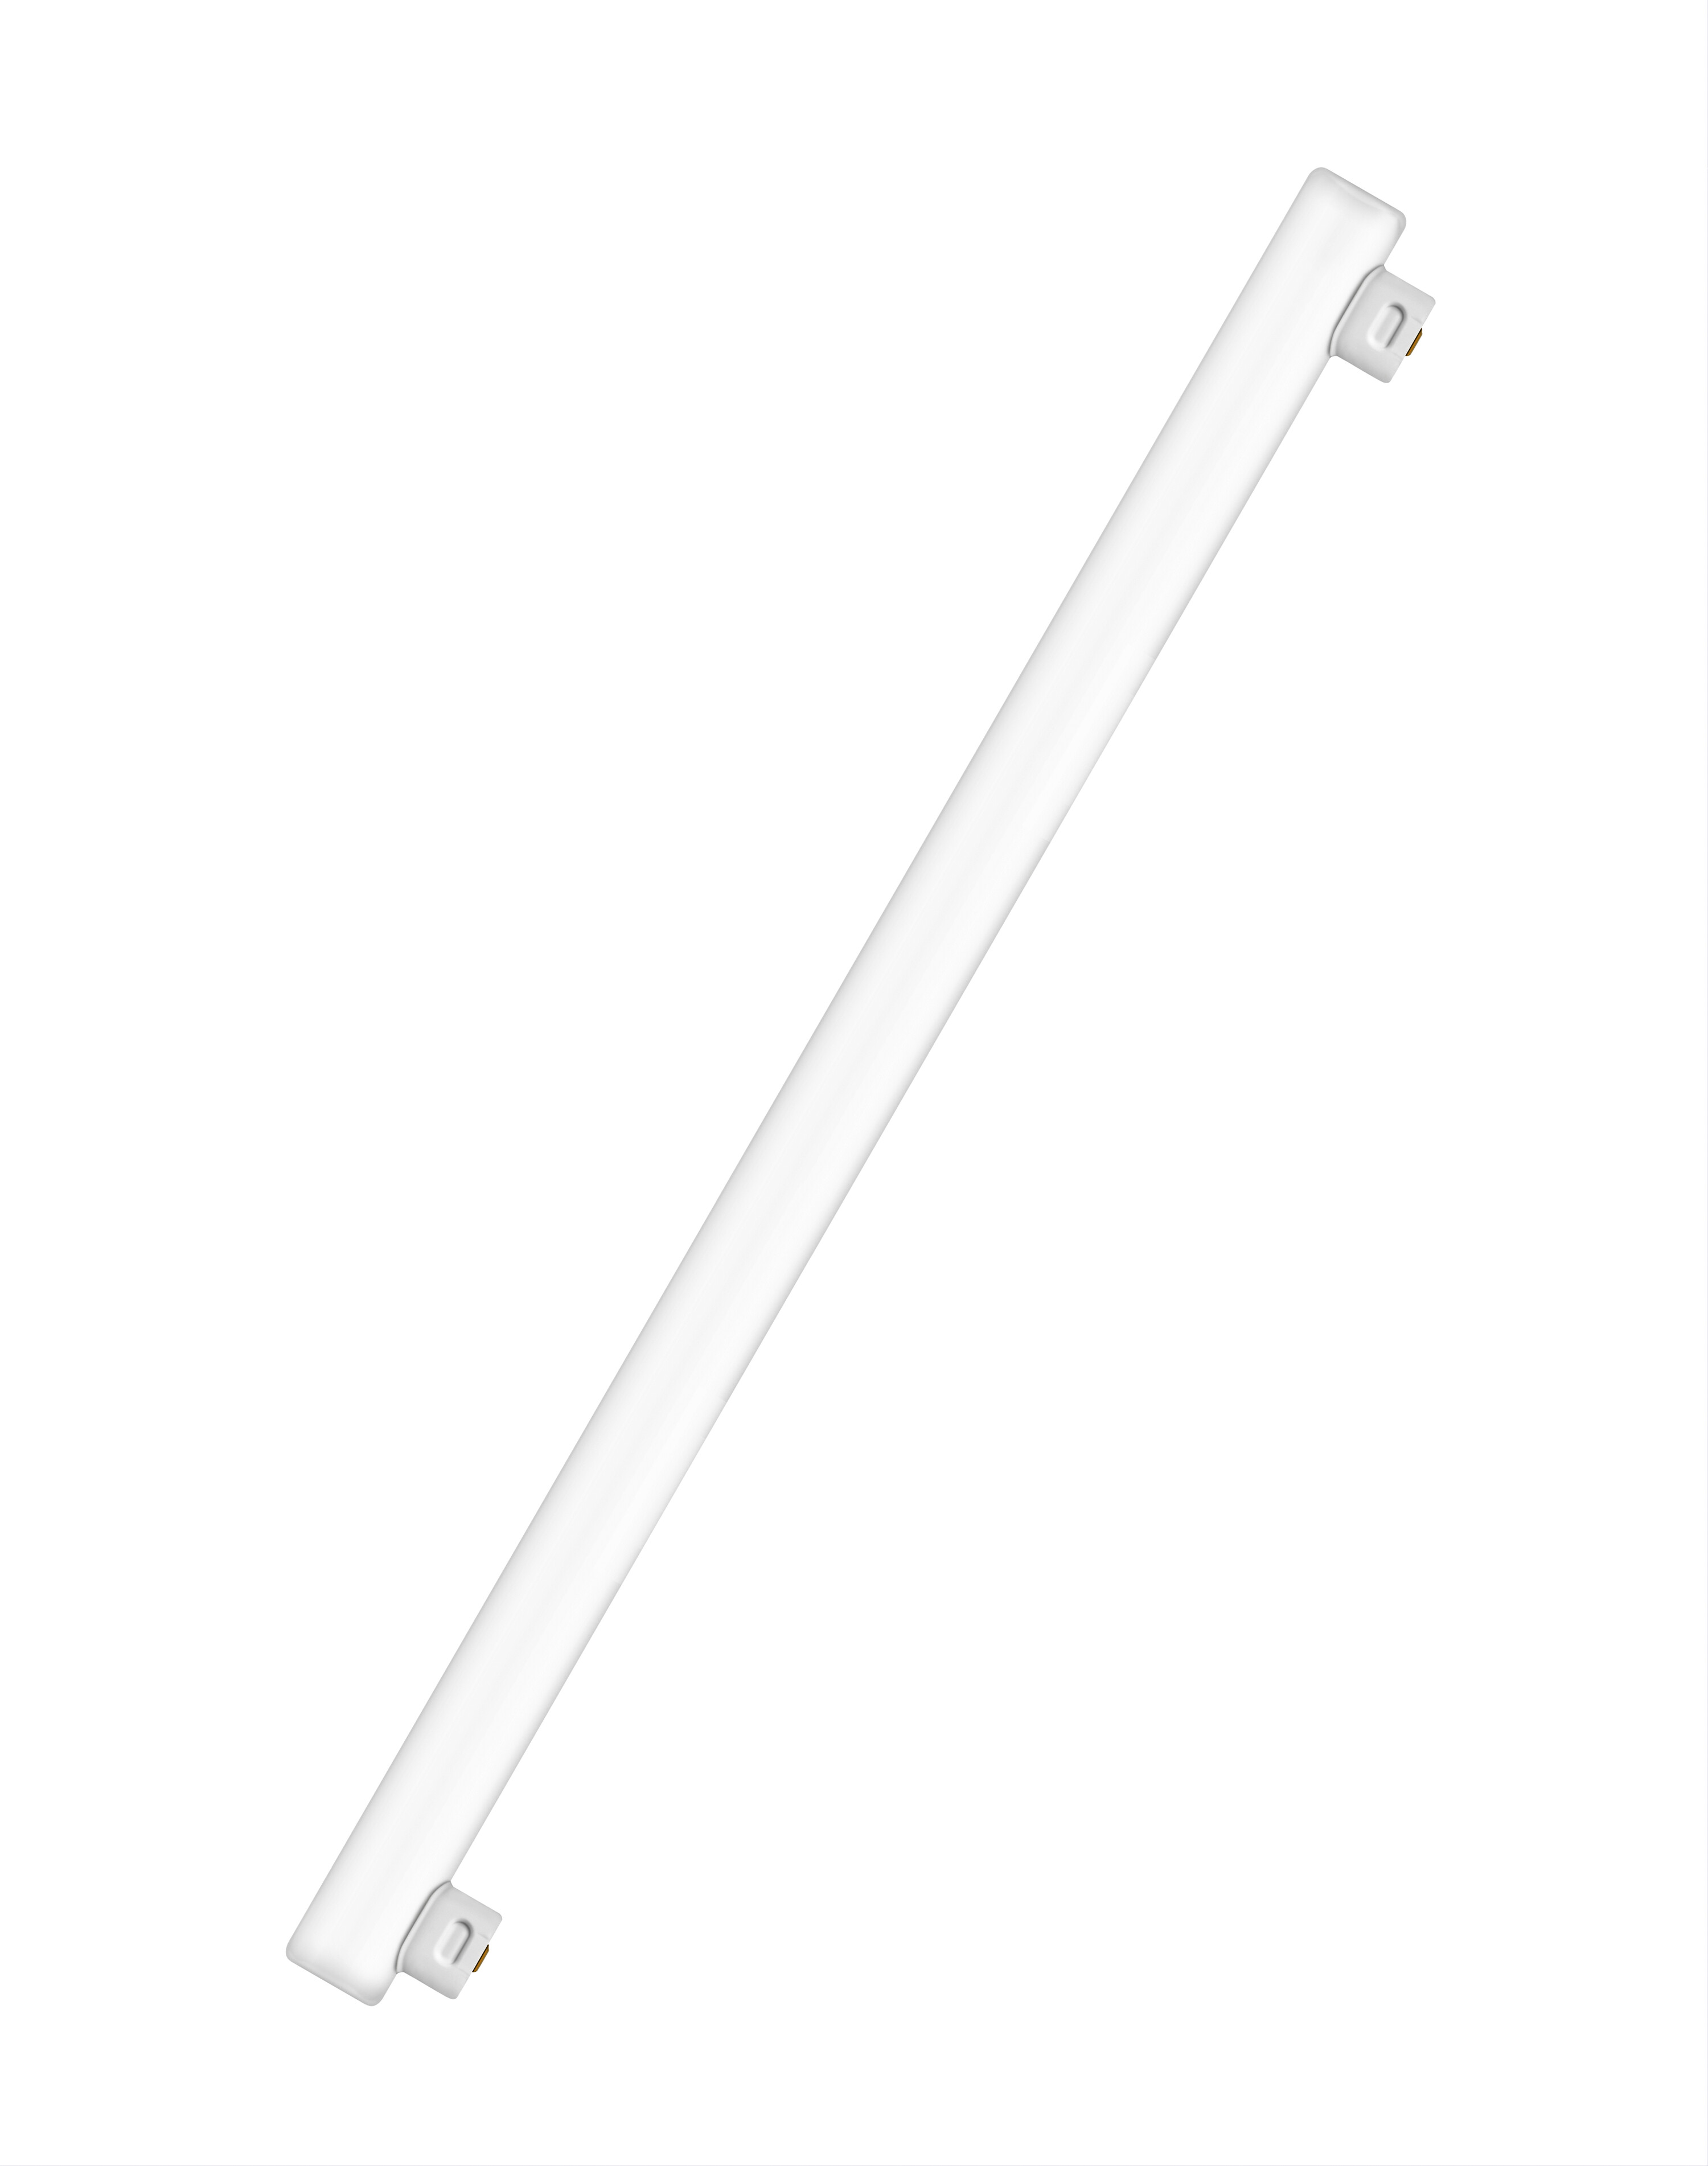 OSRAM  Lampe Warmweiß LEDinestra 470 lumen LED